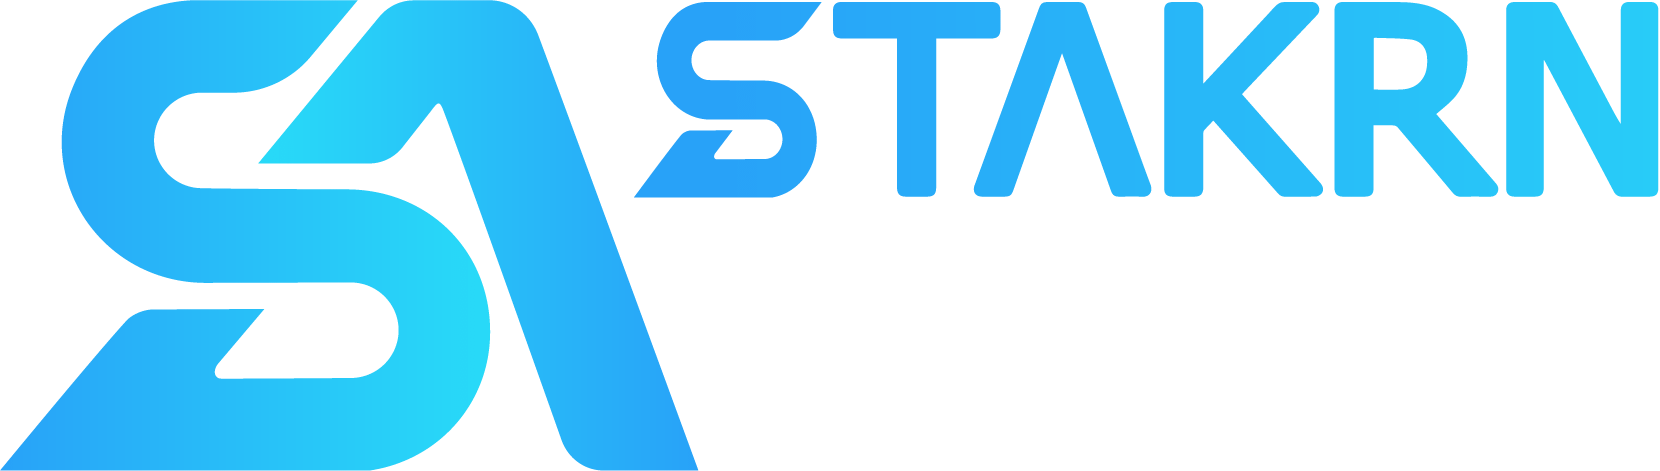 STAKRN Agency Logo vertical